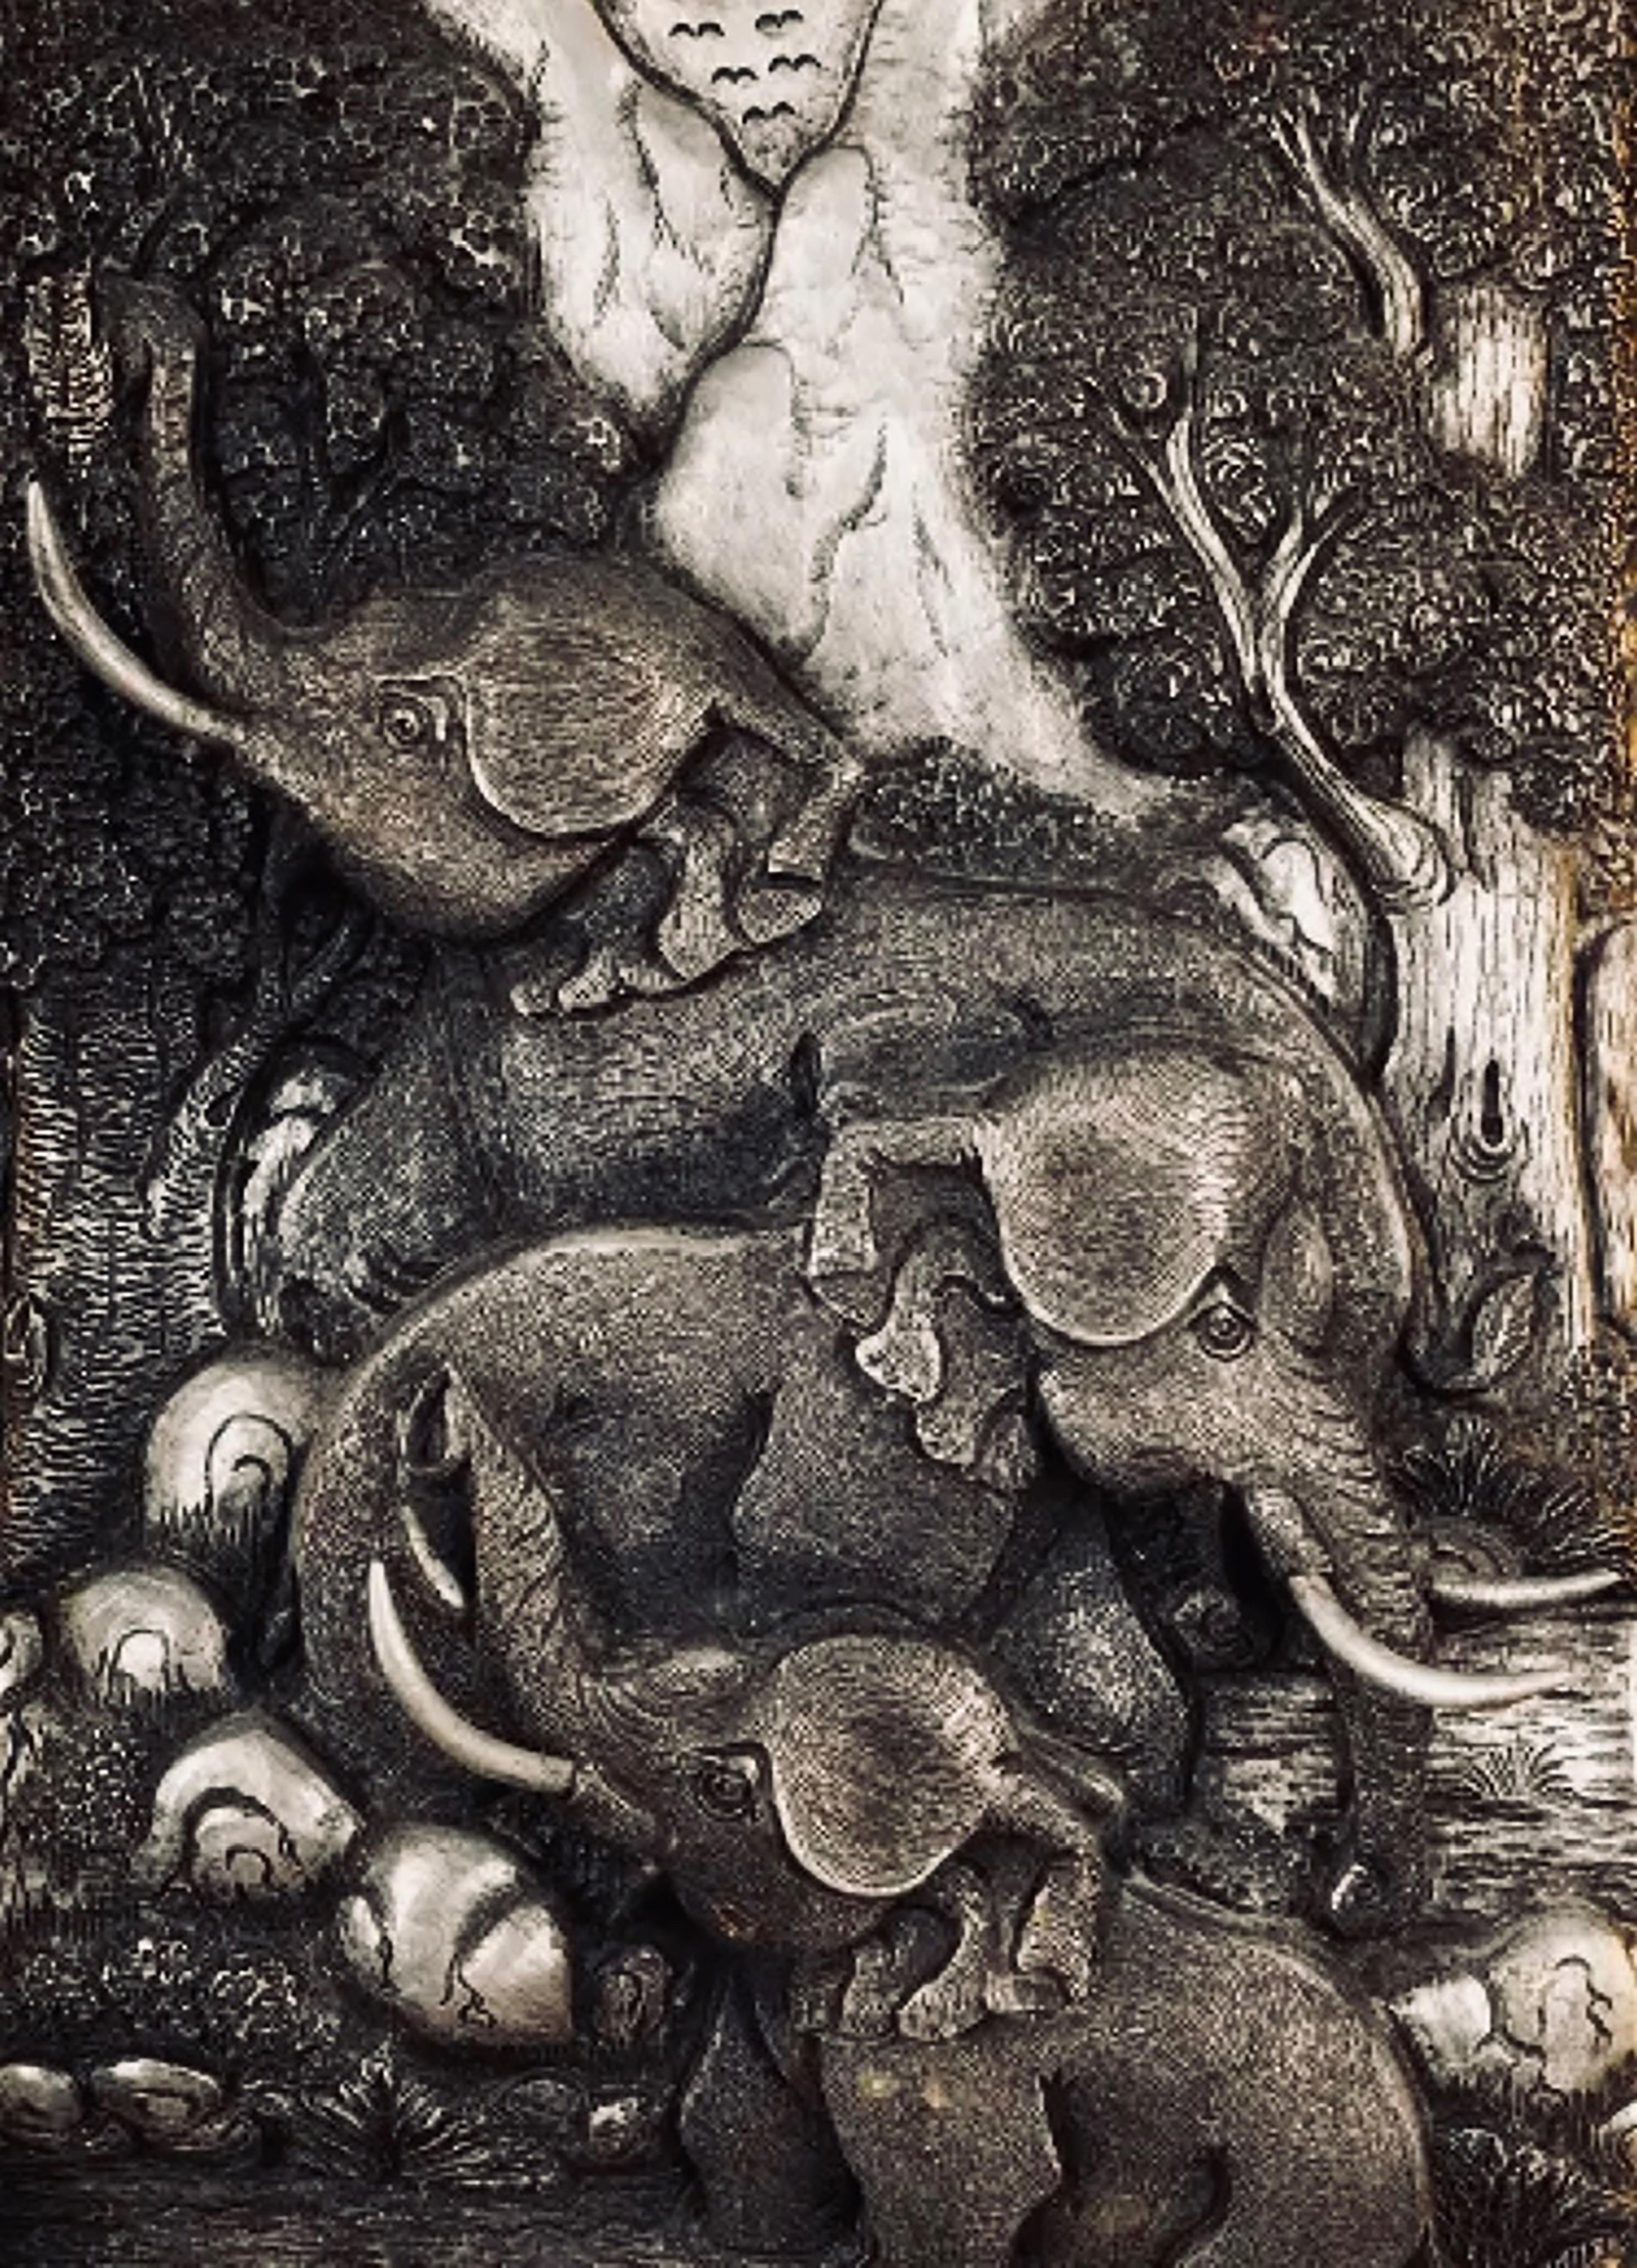 776 Gerahmte chinesische Skulptur mit Früchten aus Silber und Zinn.
Mit Szenen von Elefanten meisterhaft gemacht.
Abmessungen: 13